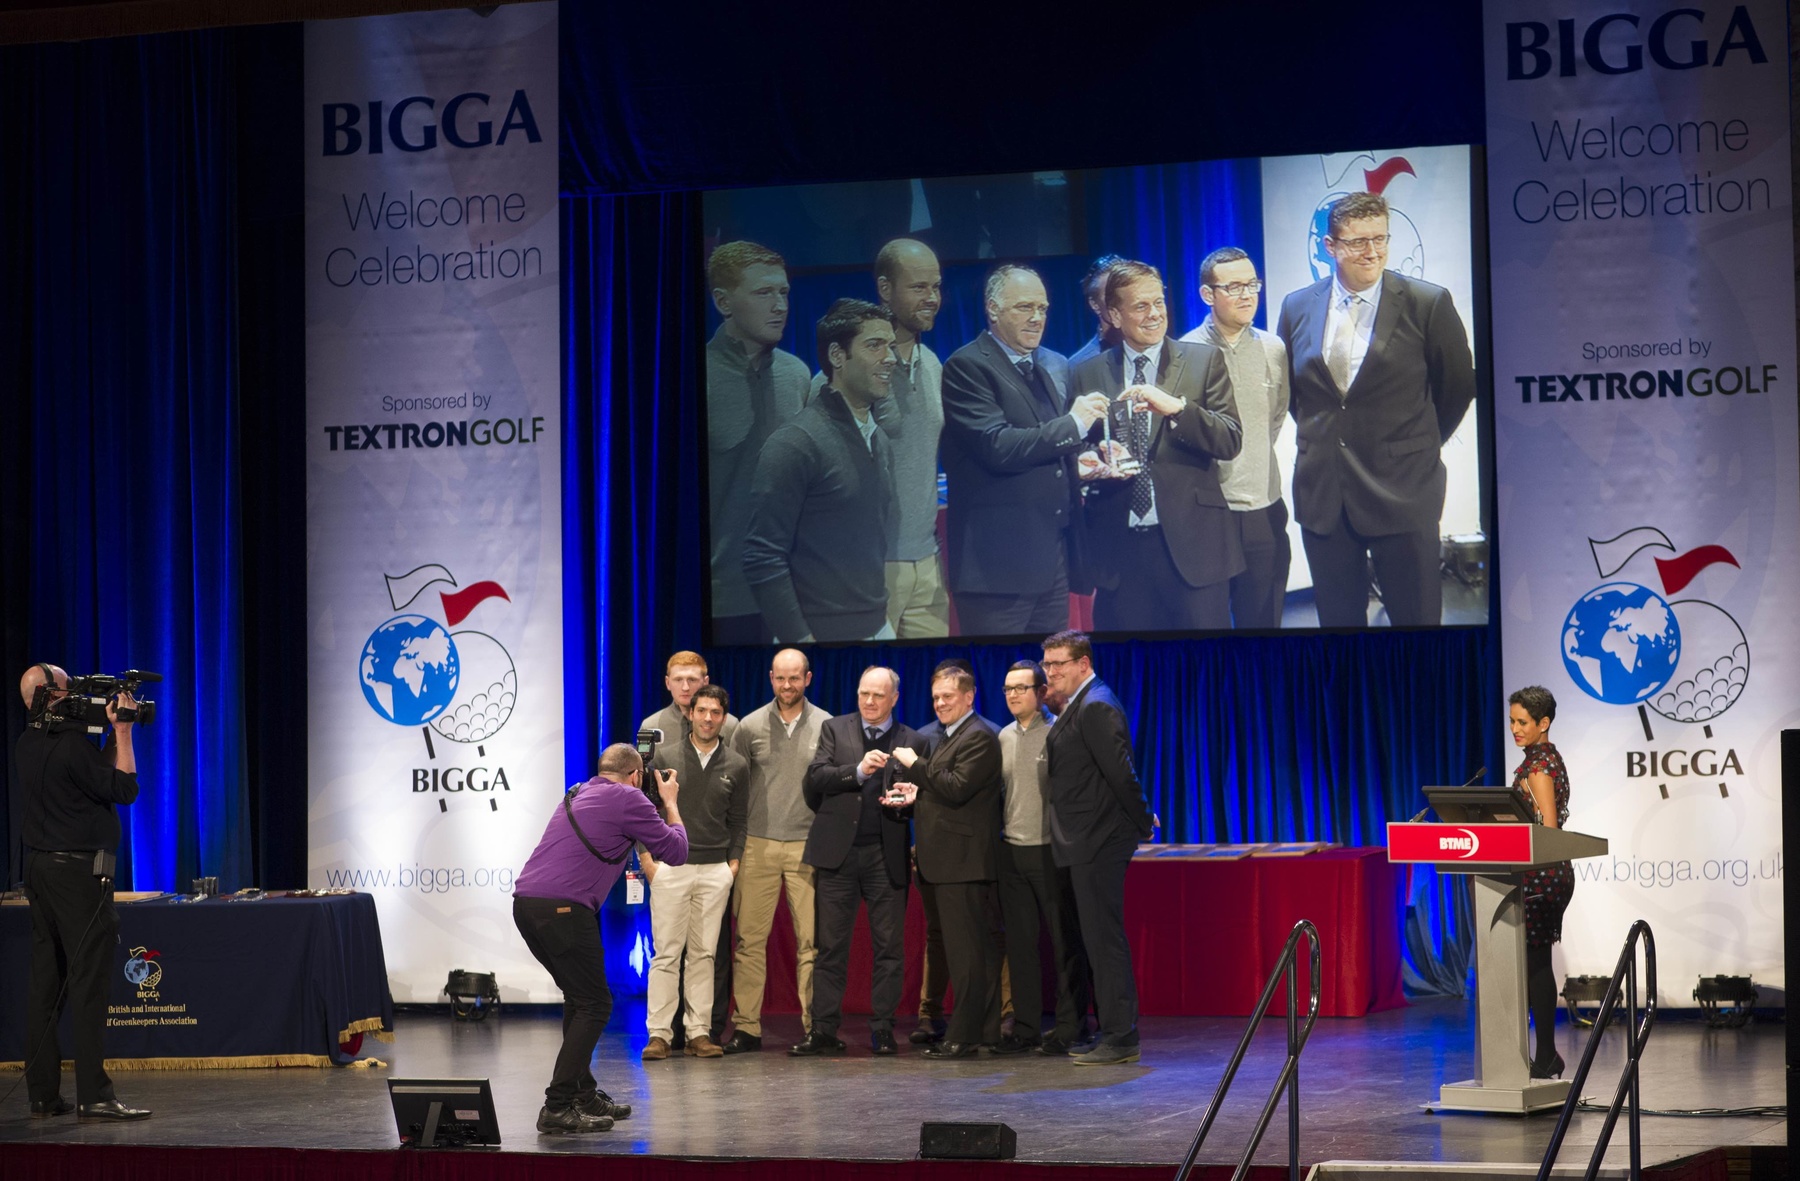 The Wentworth Club won a BIGGA Award in 2018